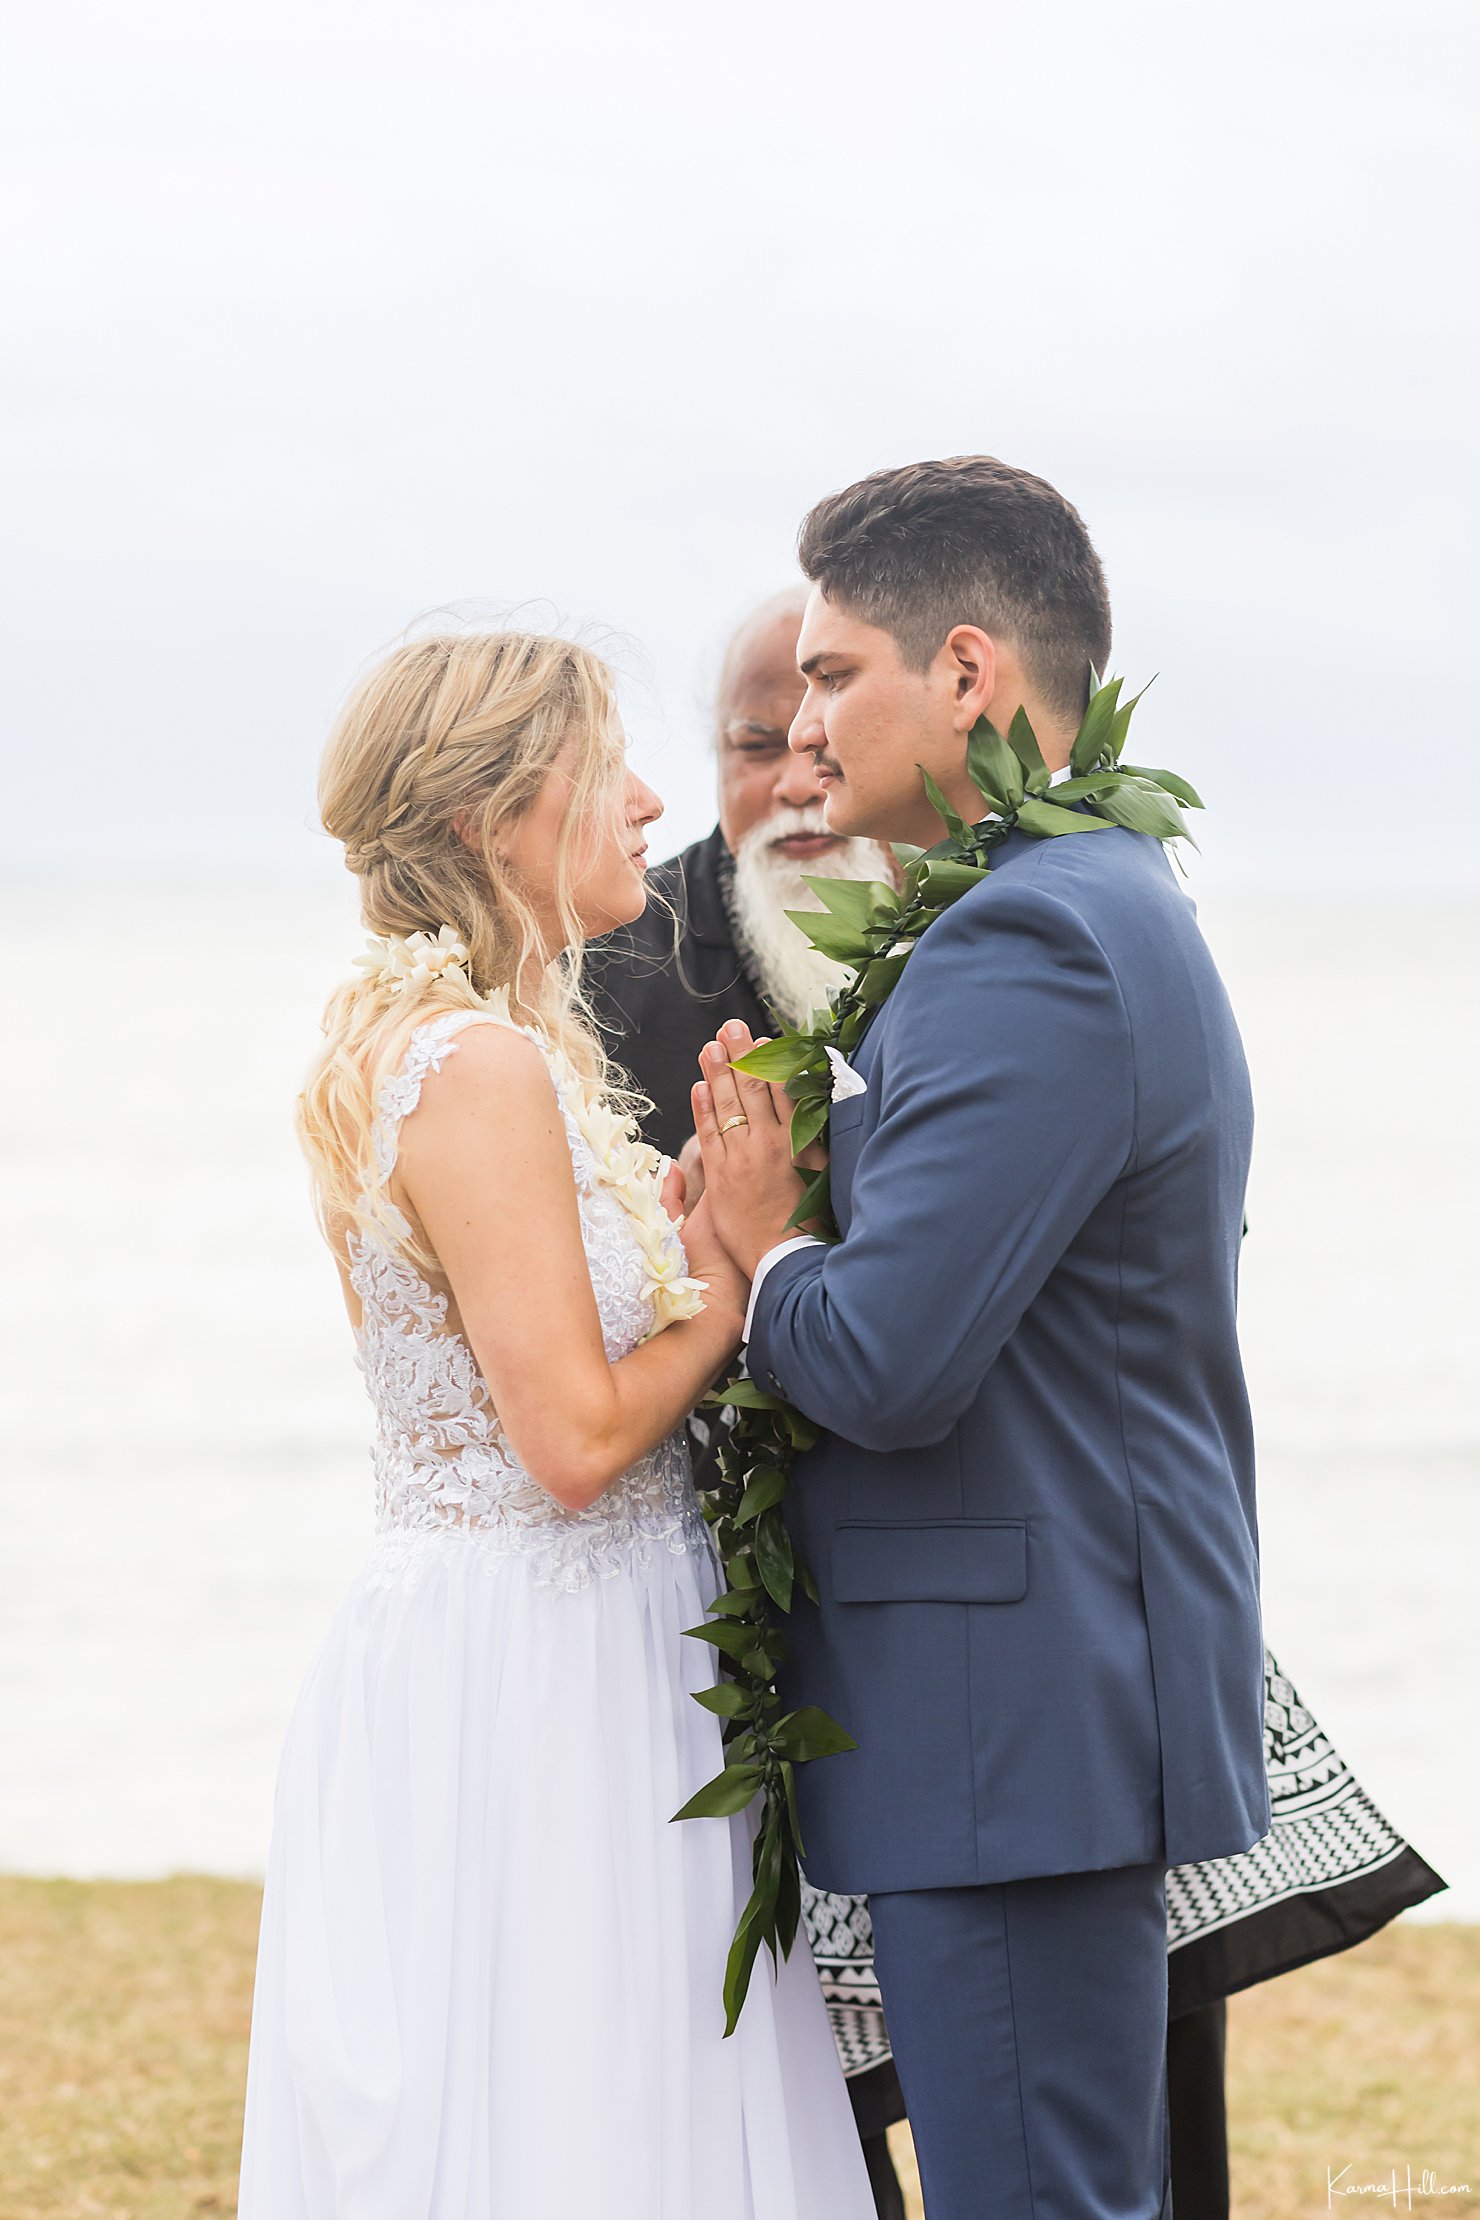 Oahu wedding photography